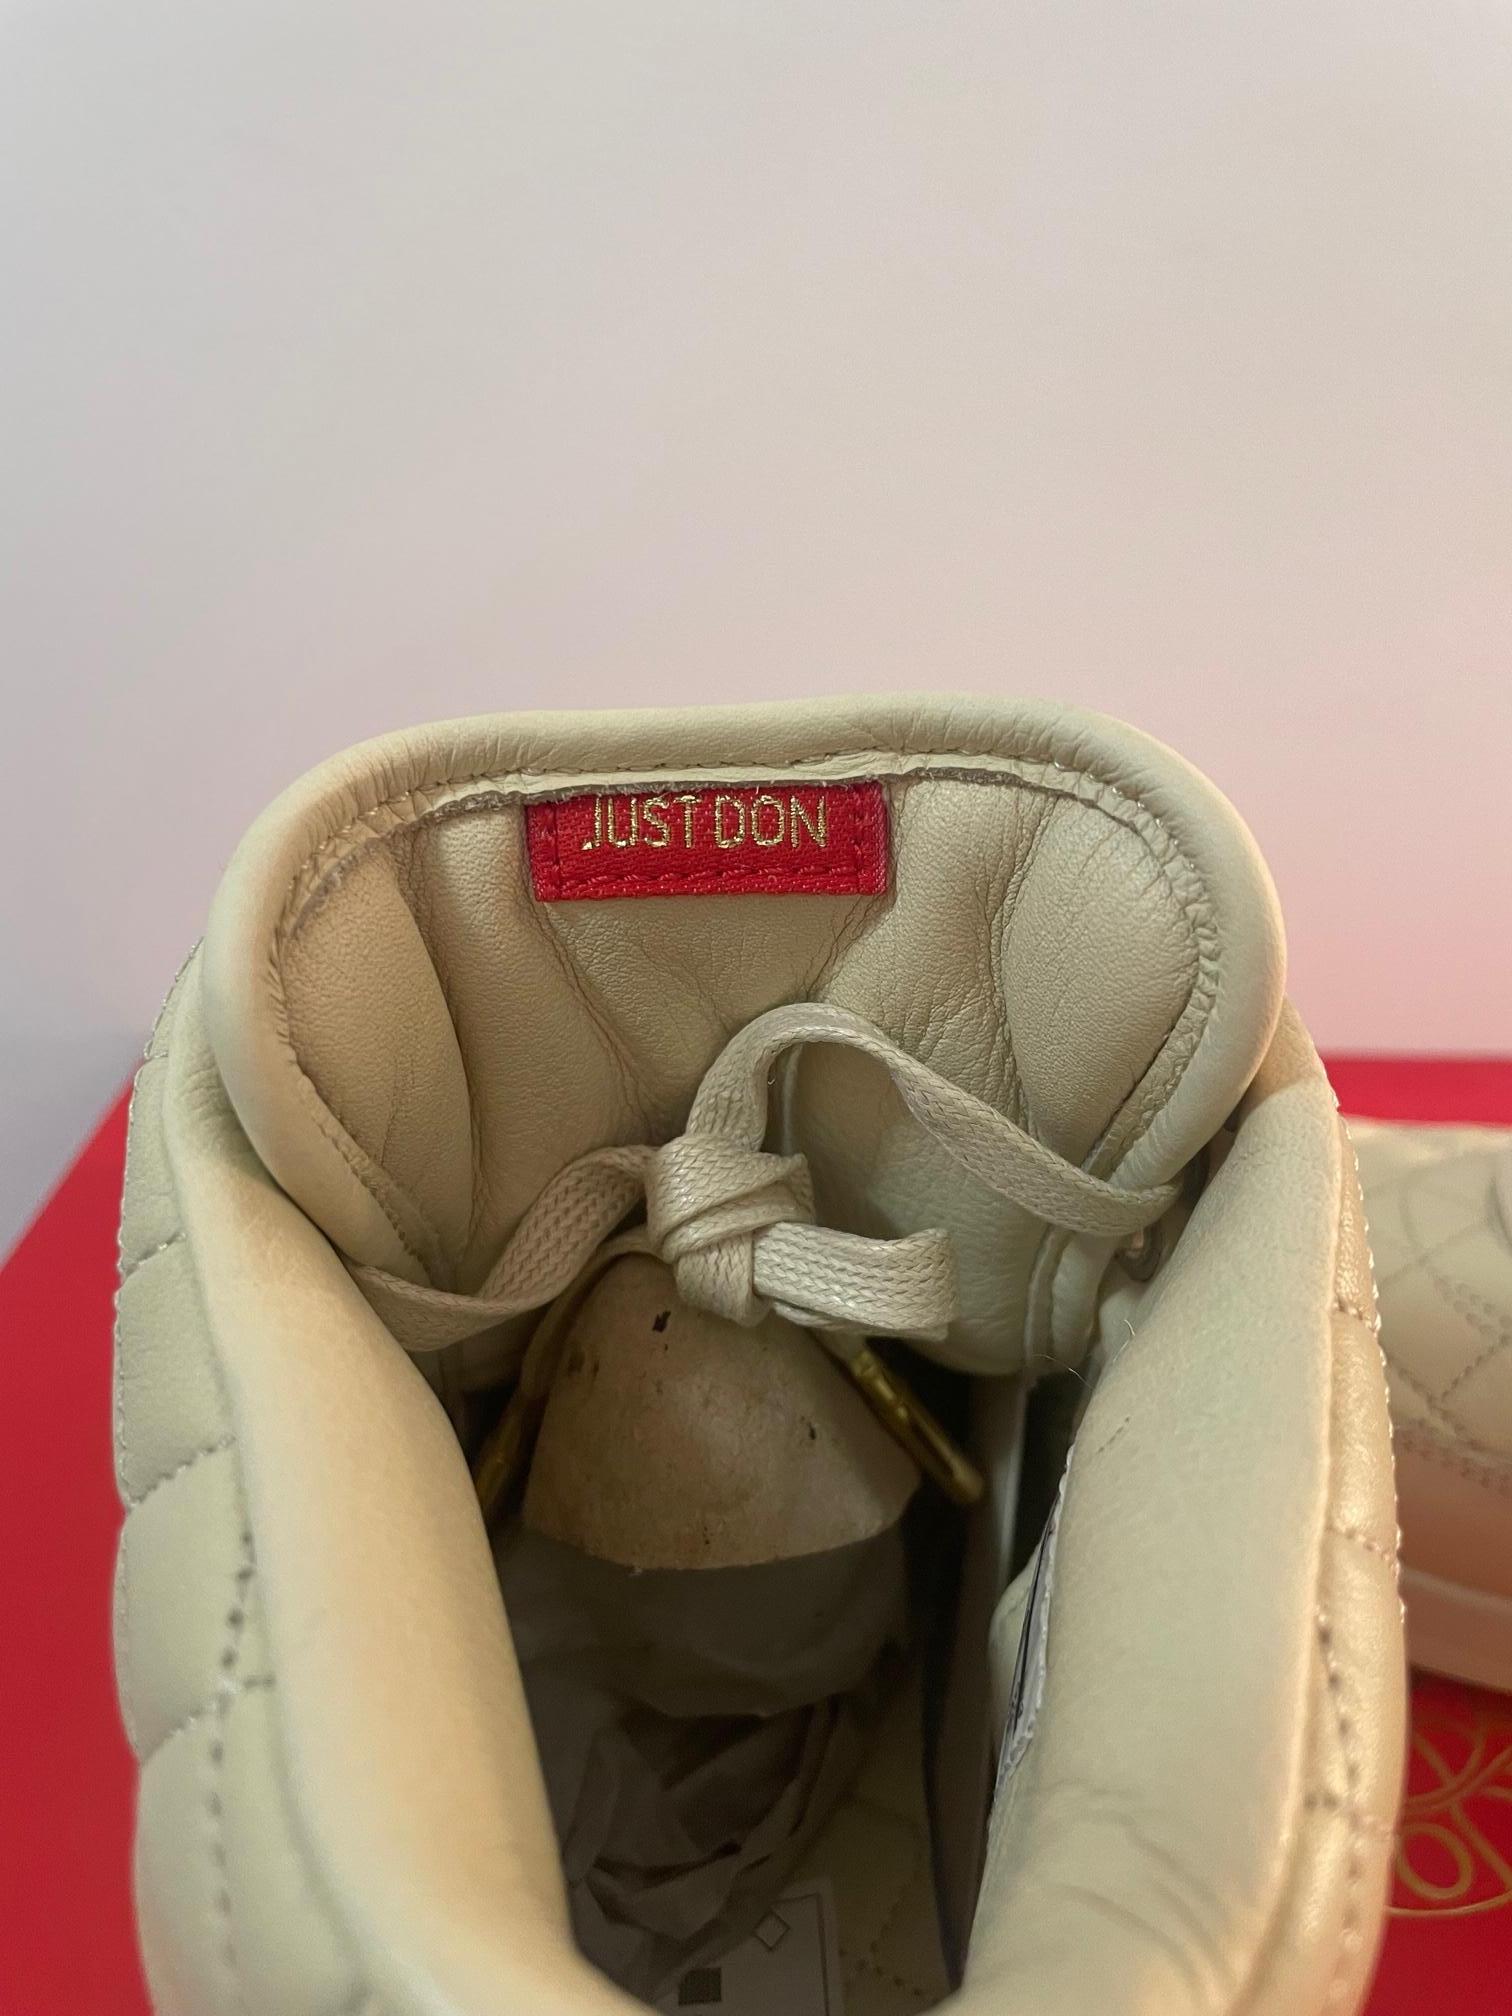 Rare Nike Shoes Just Don x Air Jordan 2 Retro “Beach” For Sale 3